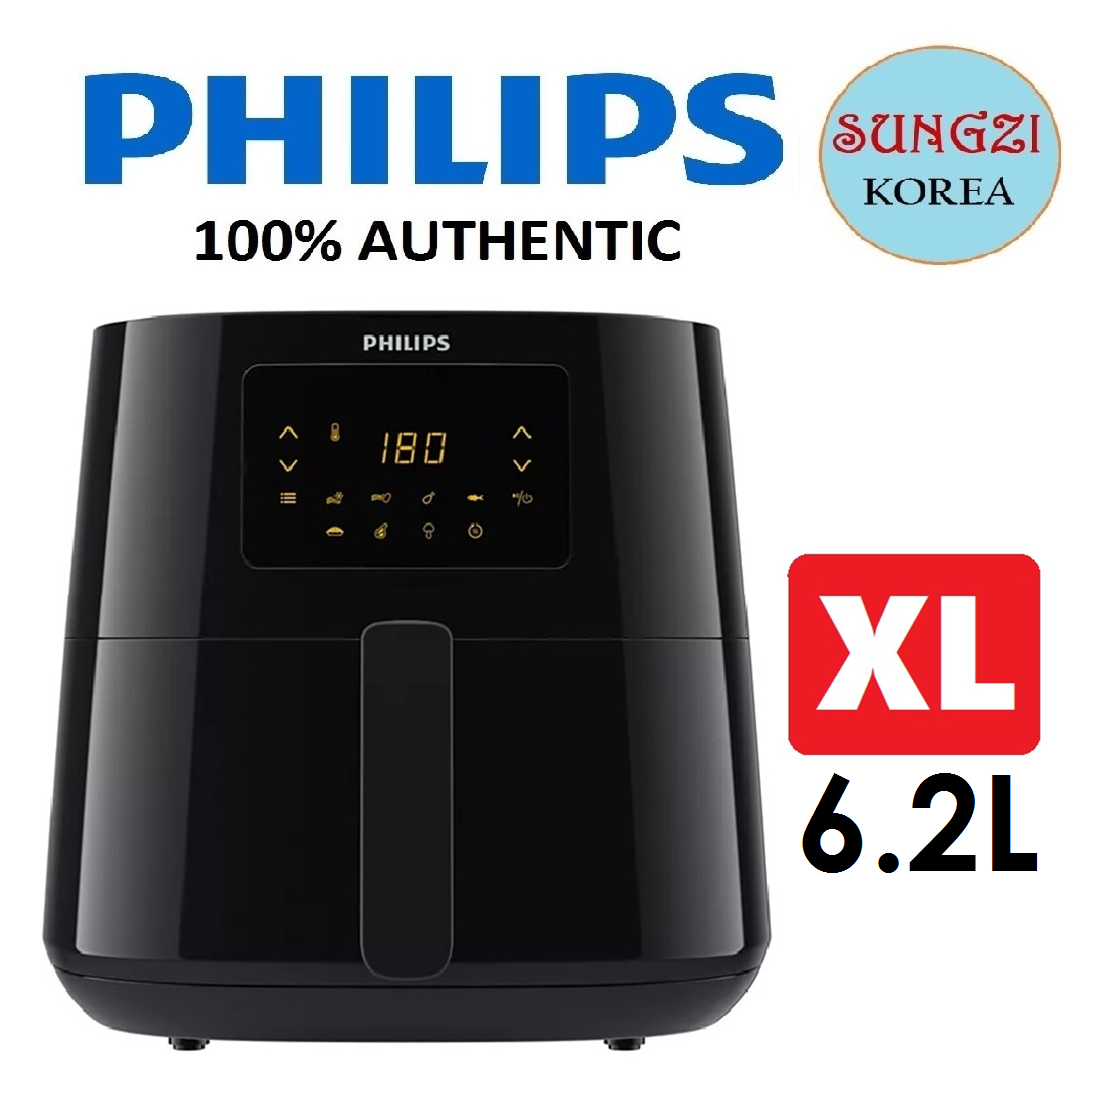 Philips Airfryer XL 6.2L